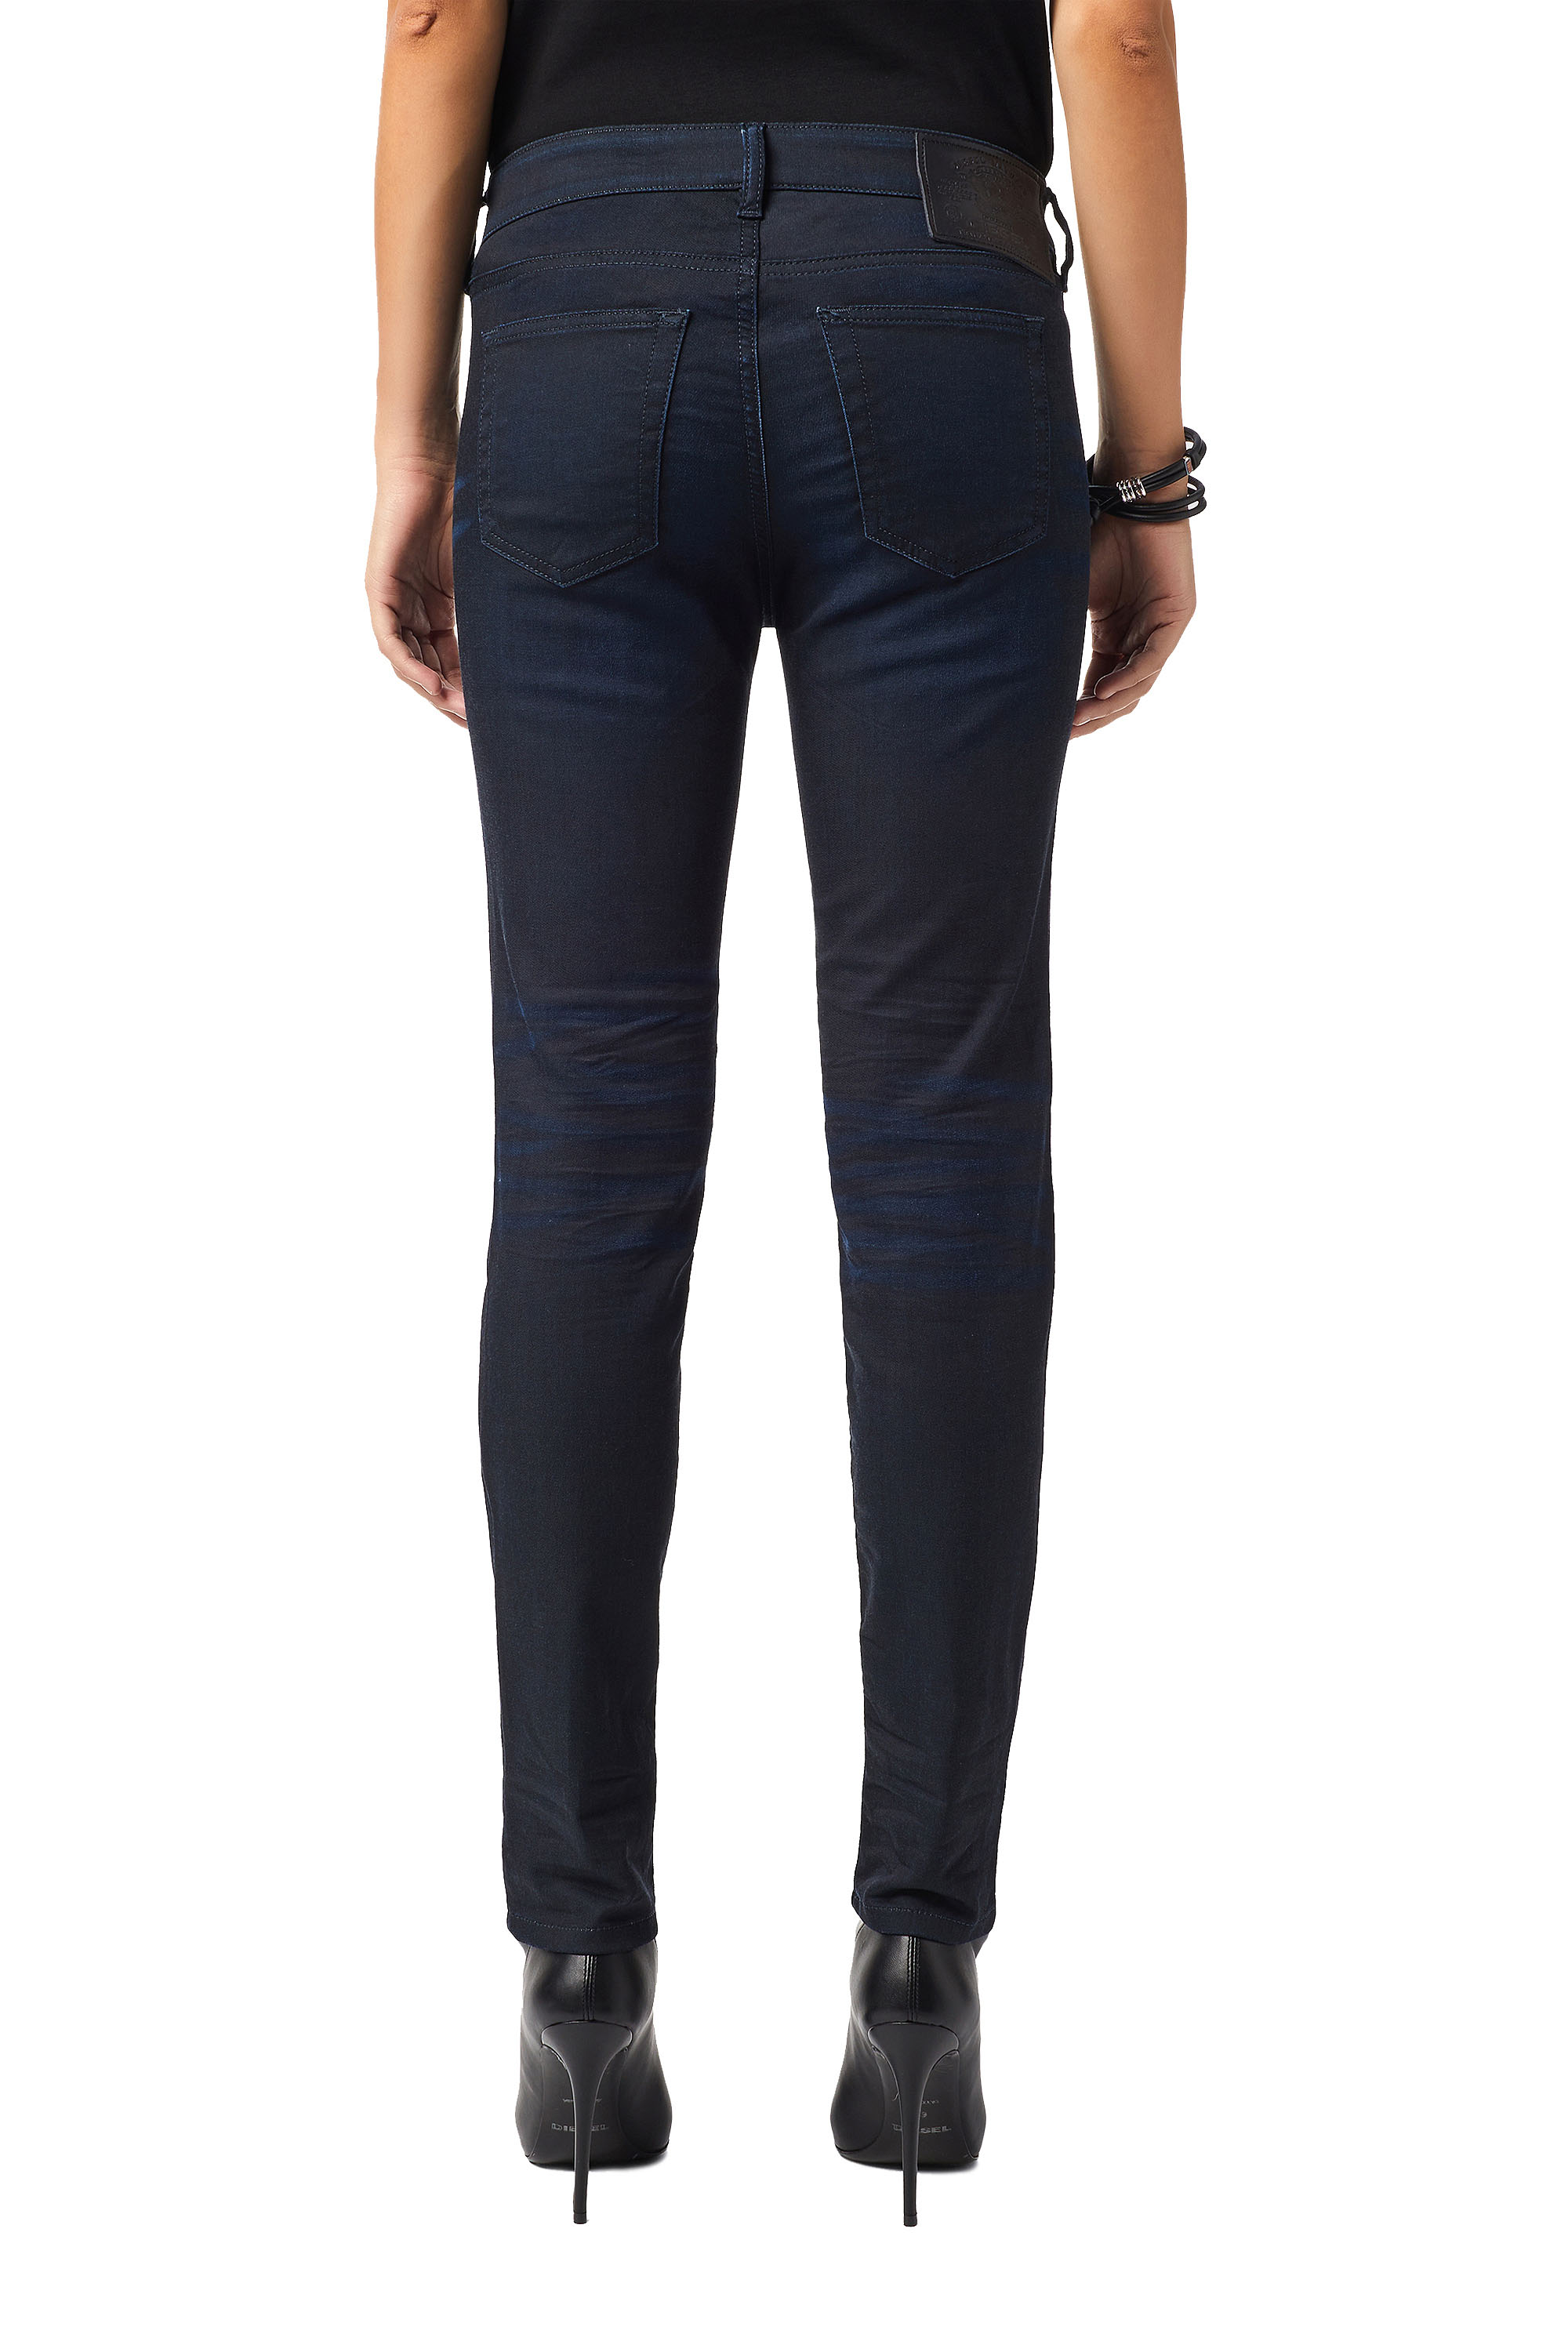 Diesel - D-Ollies Slim JoggJeans® 069XY, Dark Blue - Image 2